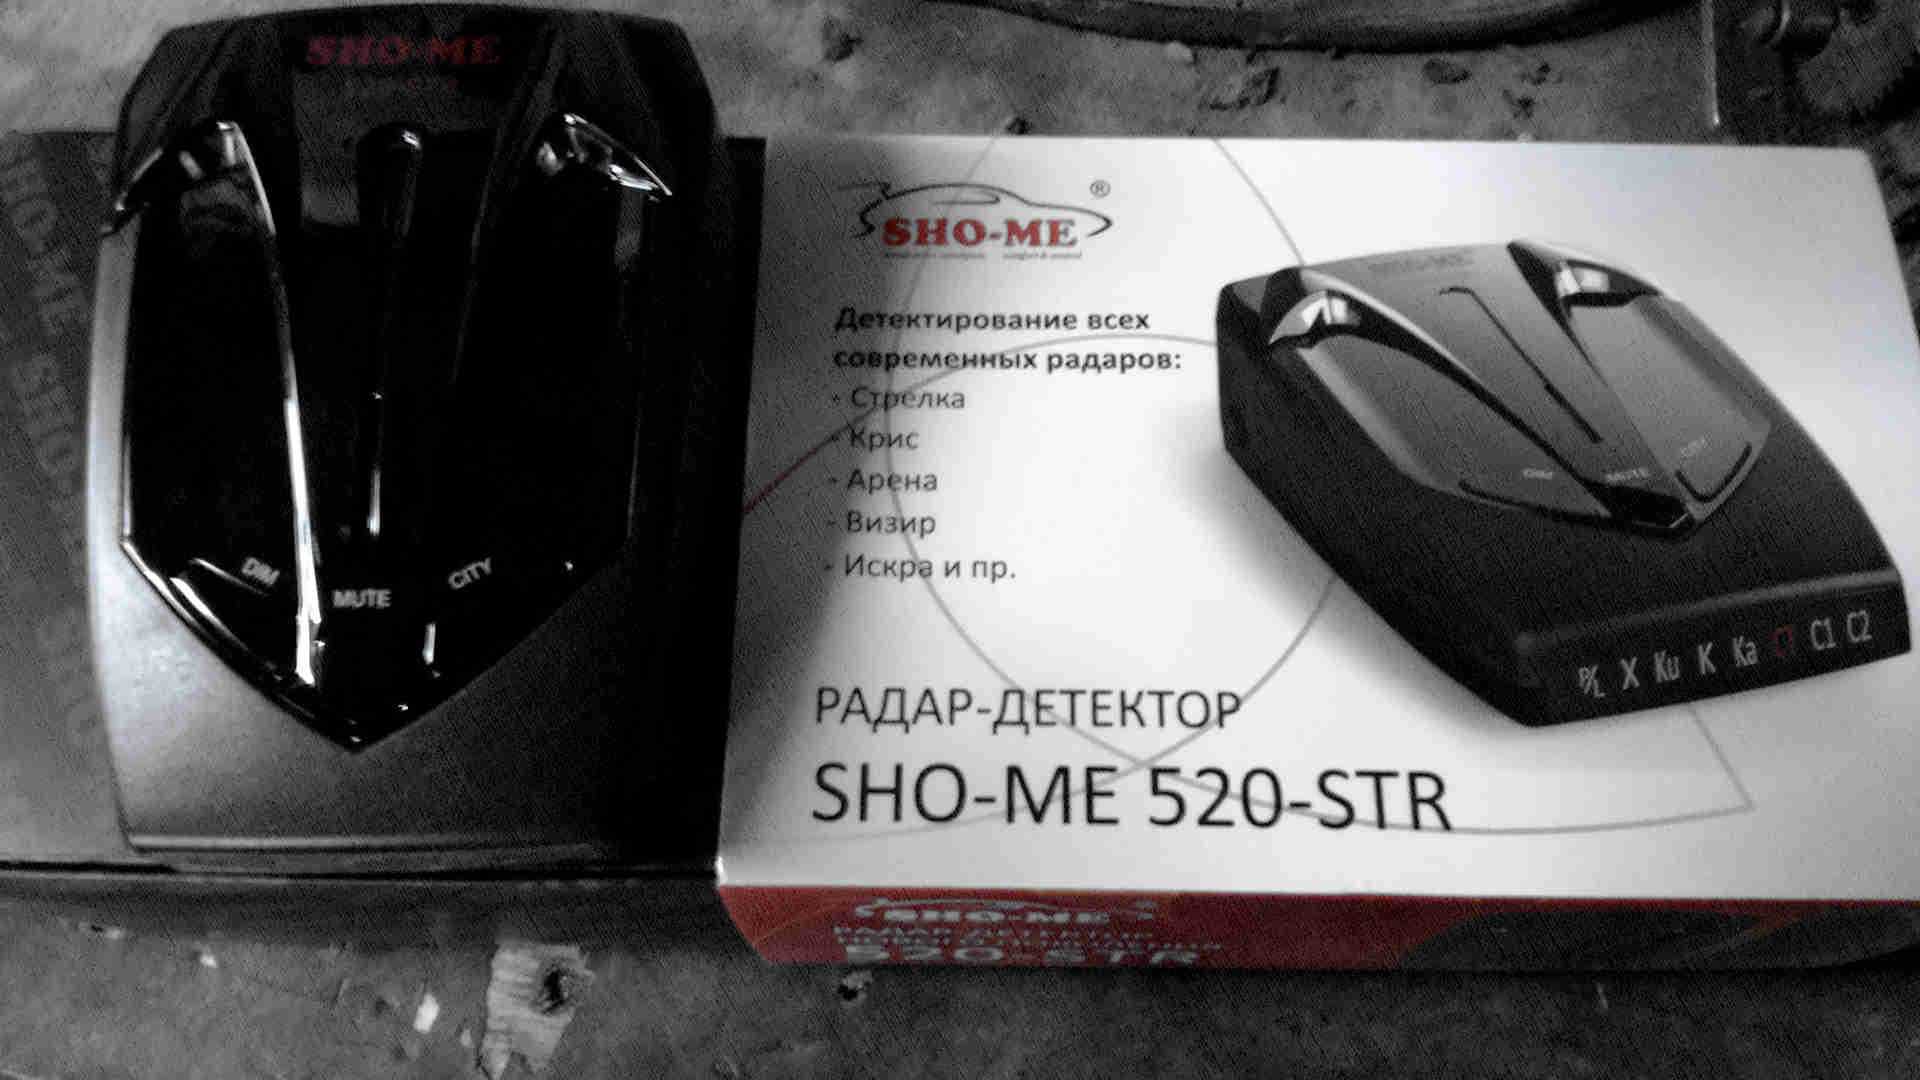 SHO-ME 520-STR - короткий но максимально информативный обзор Для большего удобства добавлены характеристики отзывы и видео